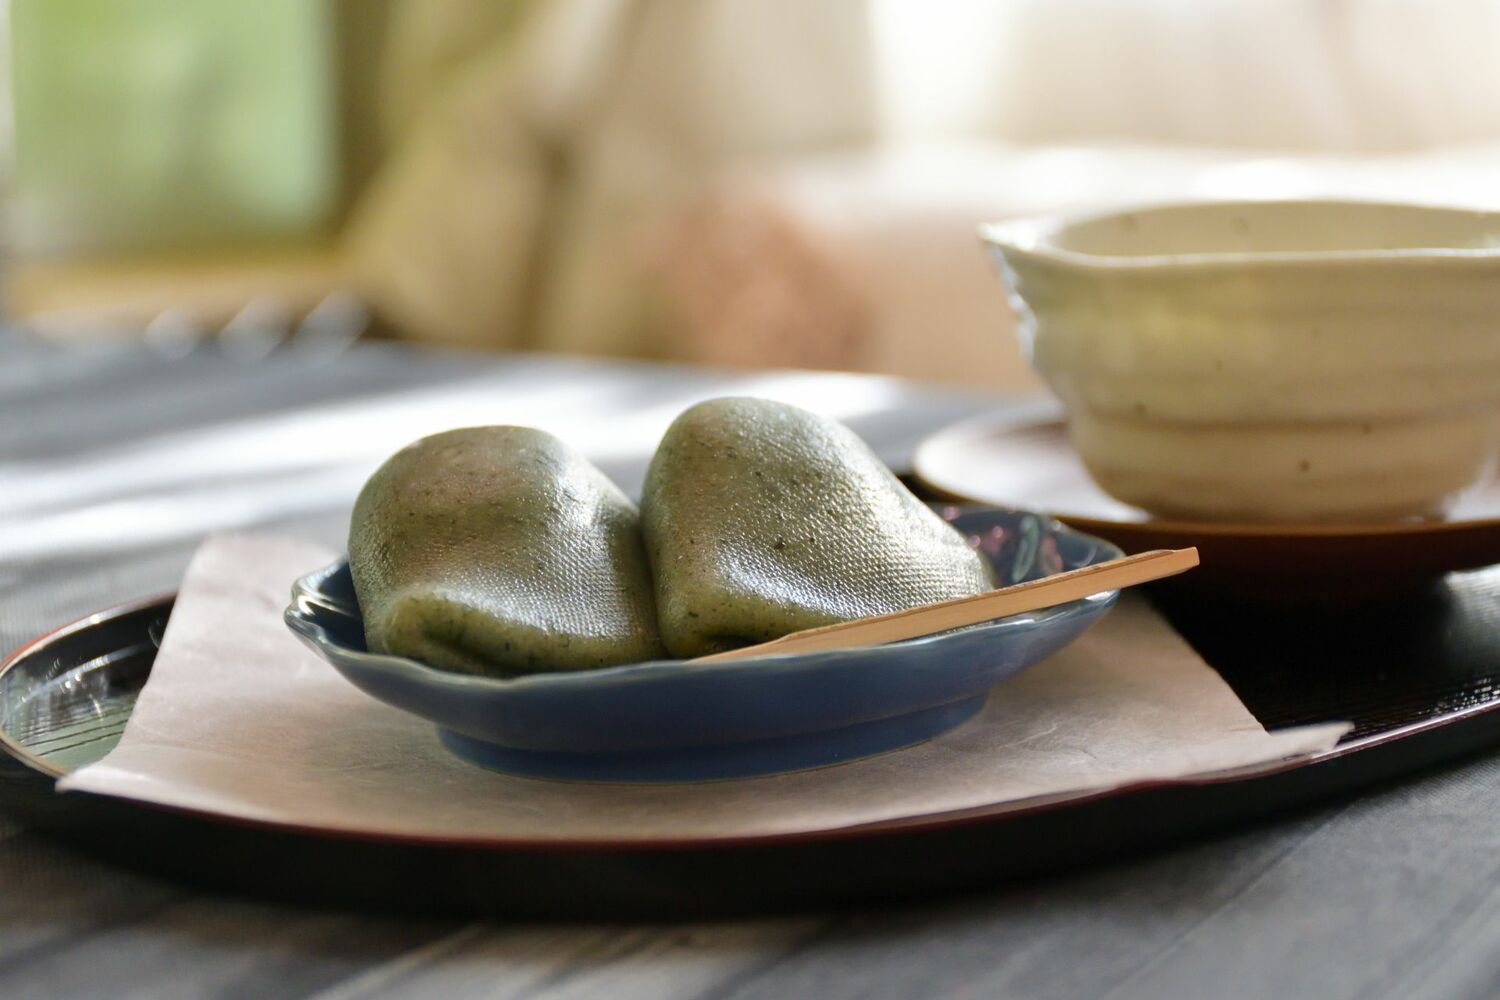 『サザエさん』カツオの食レポ「浮江さんの味がする」に「キモすぎる」の画像